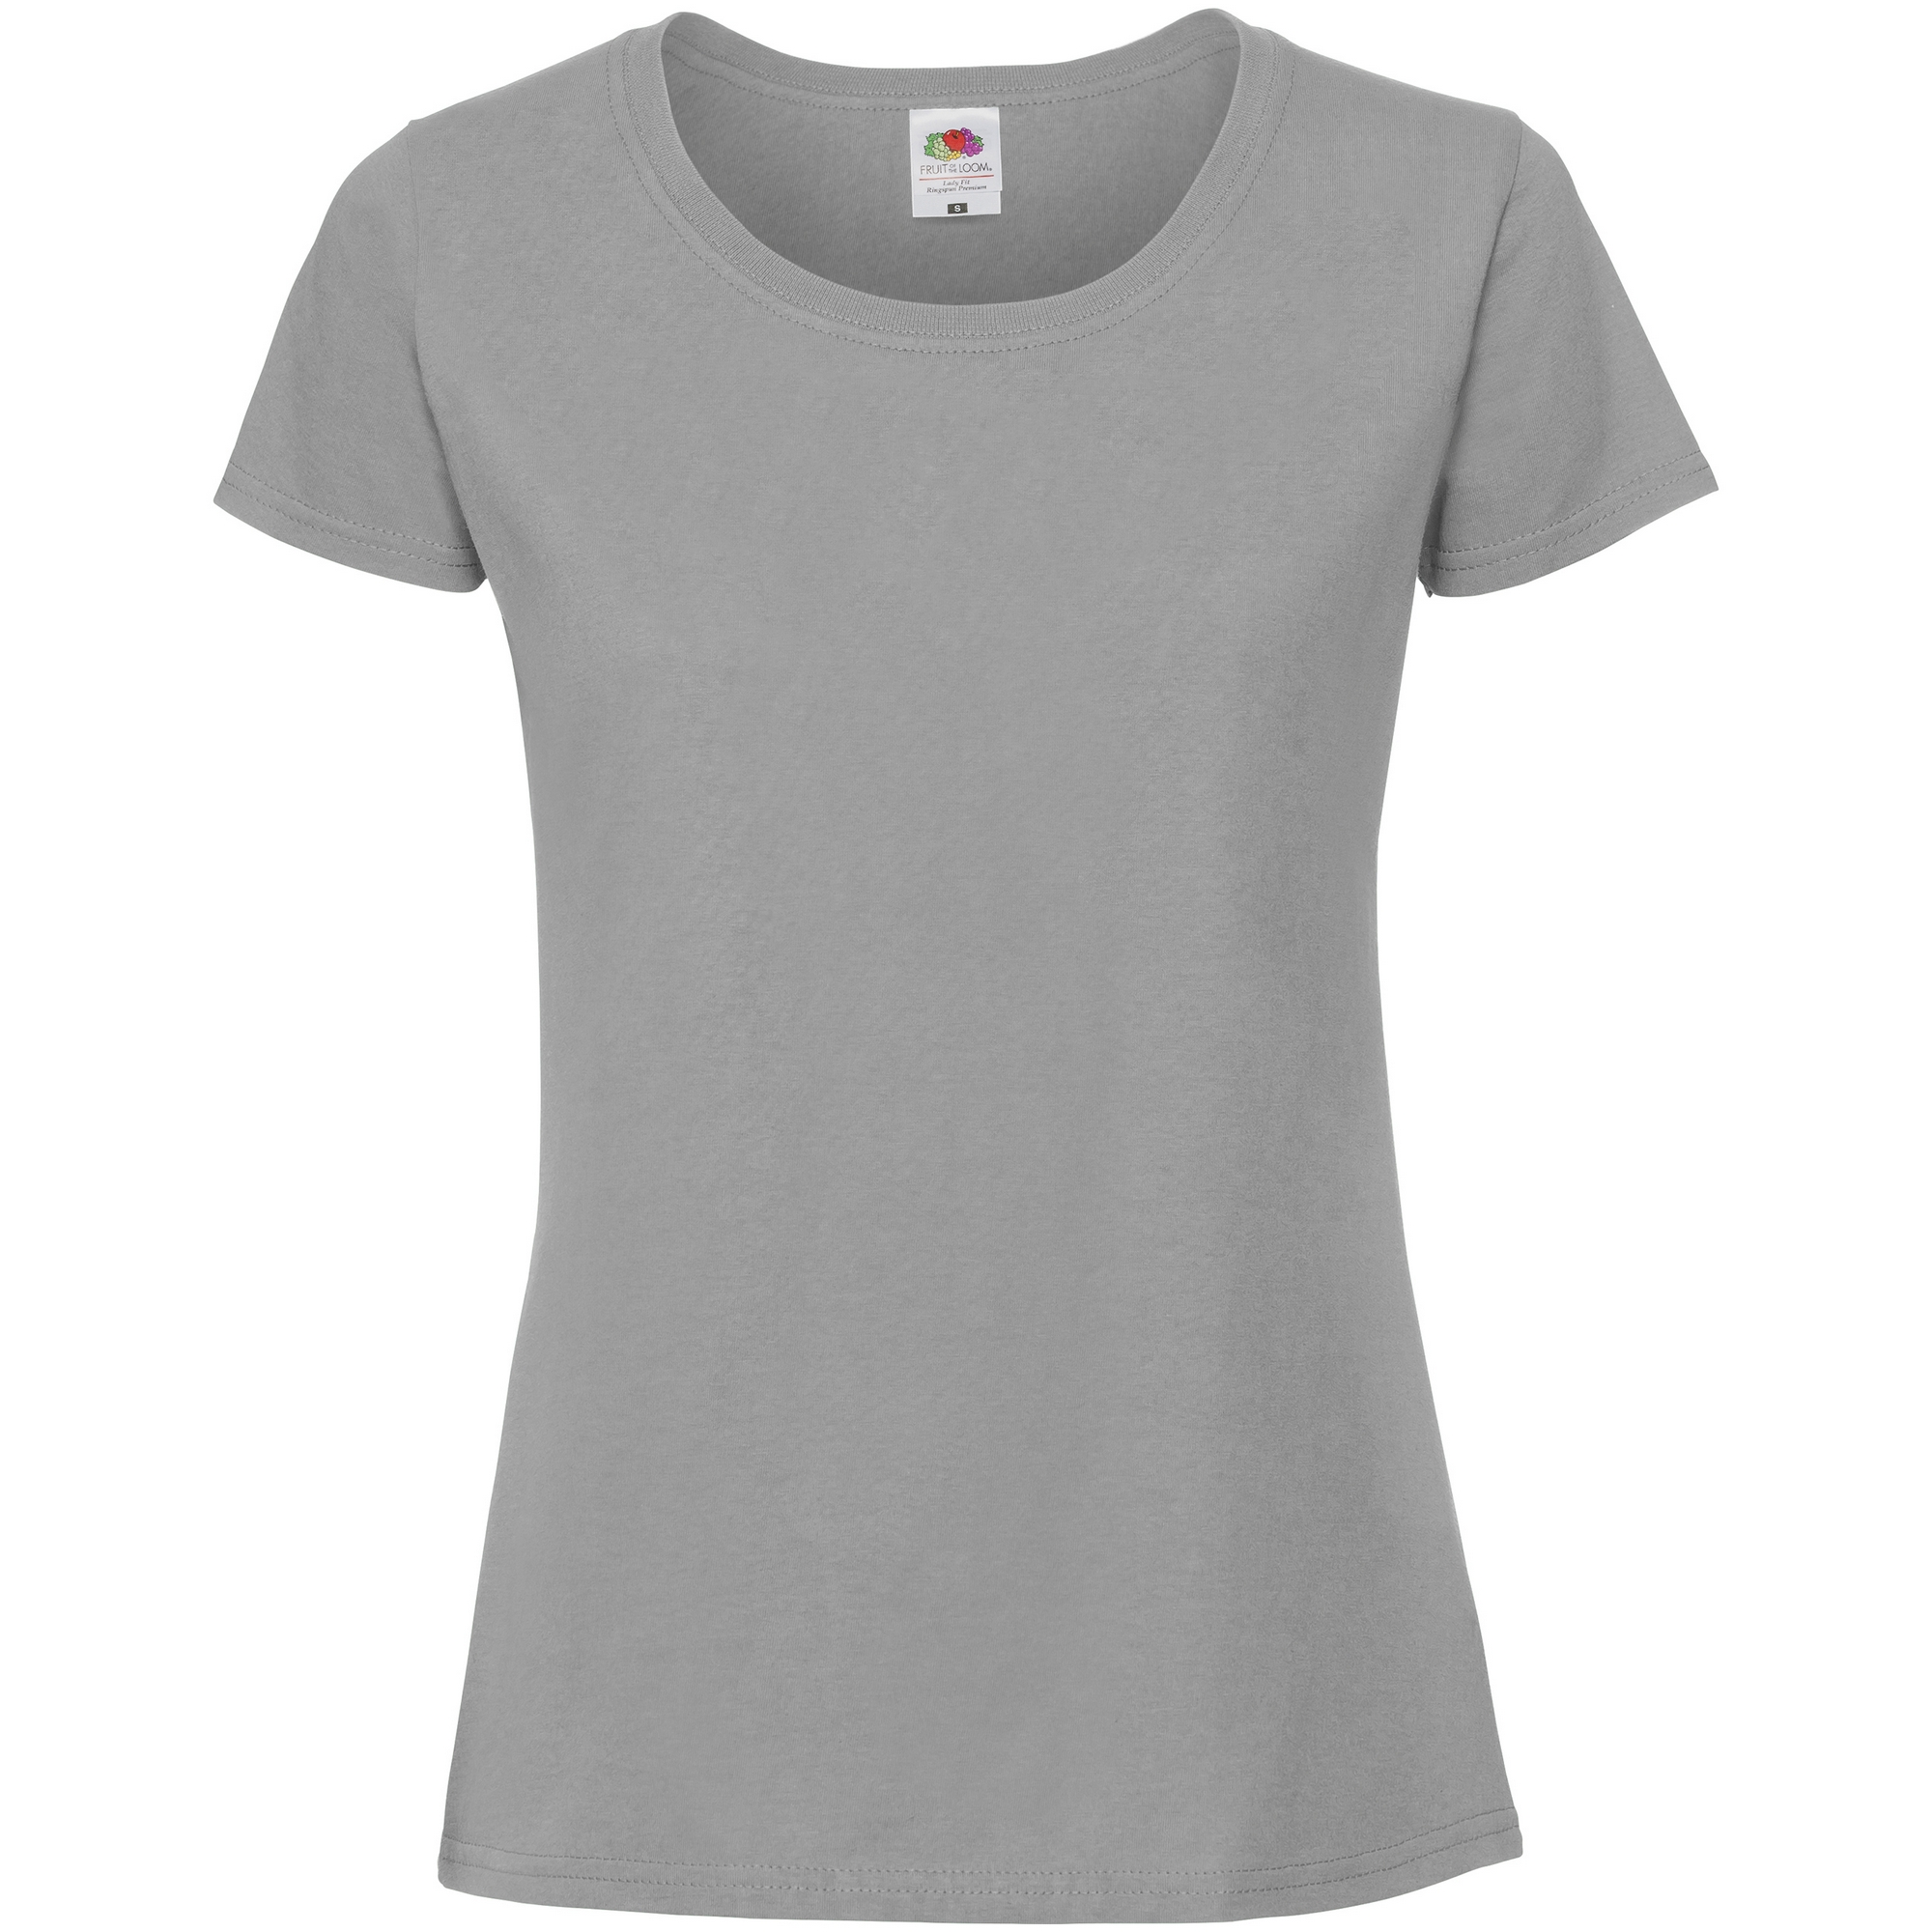 Camiseta Premium Womens/ladies Fit Ringspun Fruit Of The Loom